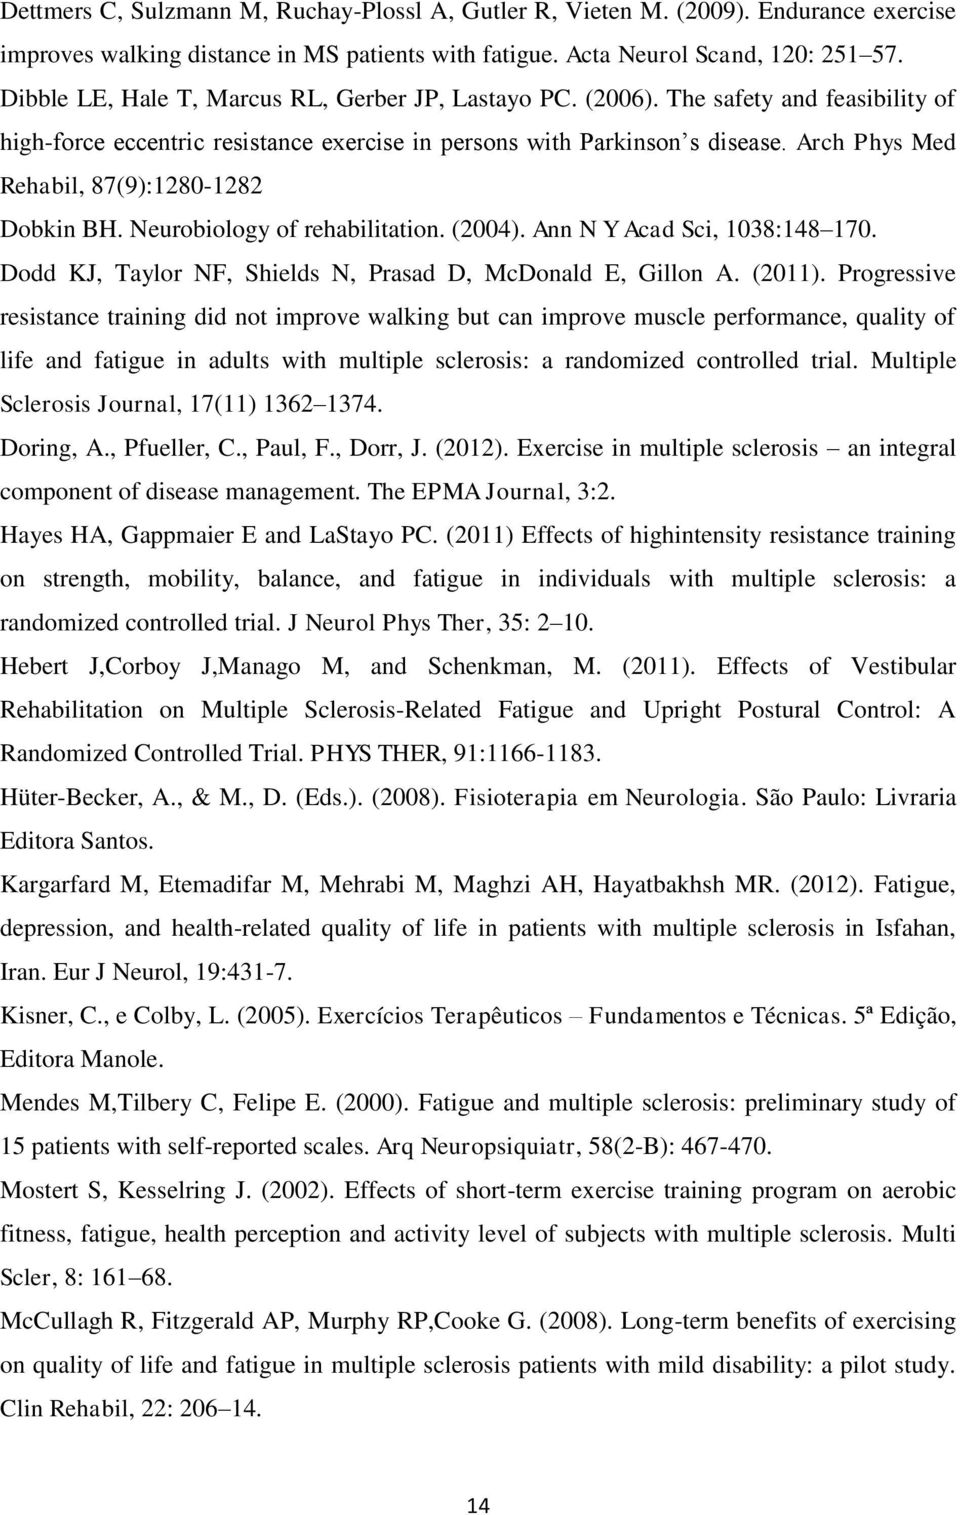 Arch Phys Med Rehabil, 87(9):1280-1282 Dobkin BH. Neurobiology of rehabilitation. (2004). Ann N Y Acad Sci, 1038:148 170. Dodd KJ, Taylor NF, Shields N, Prasad D, McDonald E, Gillon A. (2011).